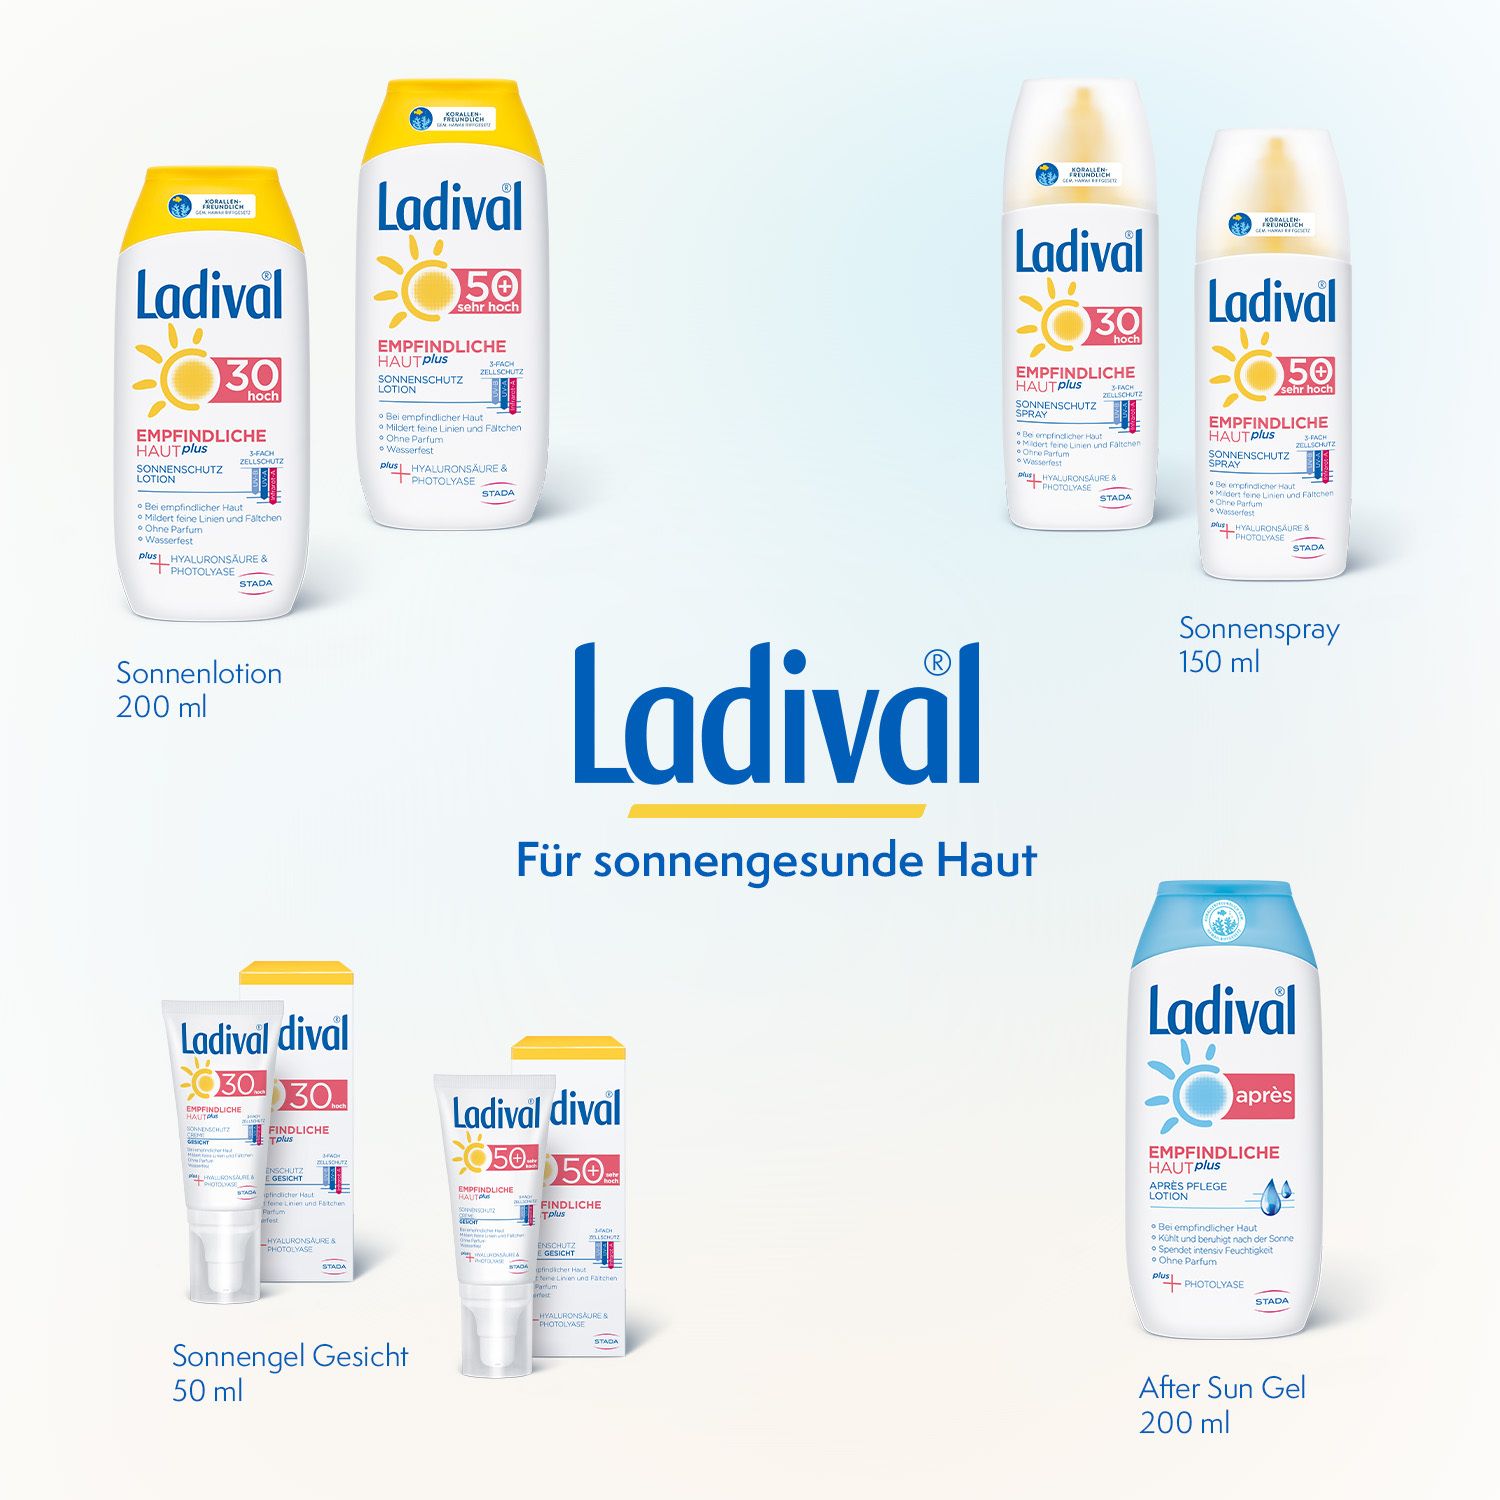 Ladival® Empfindliche Haut plus Après Lotion intensive After Sun Pflege mit Photolyase